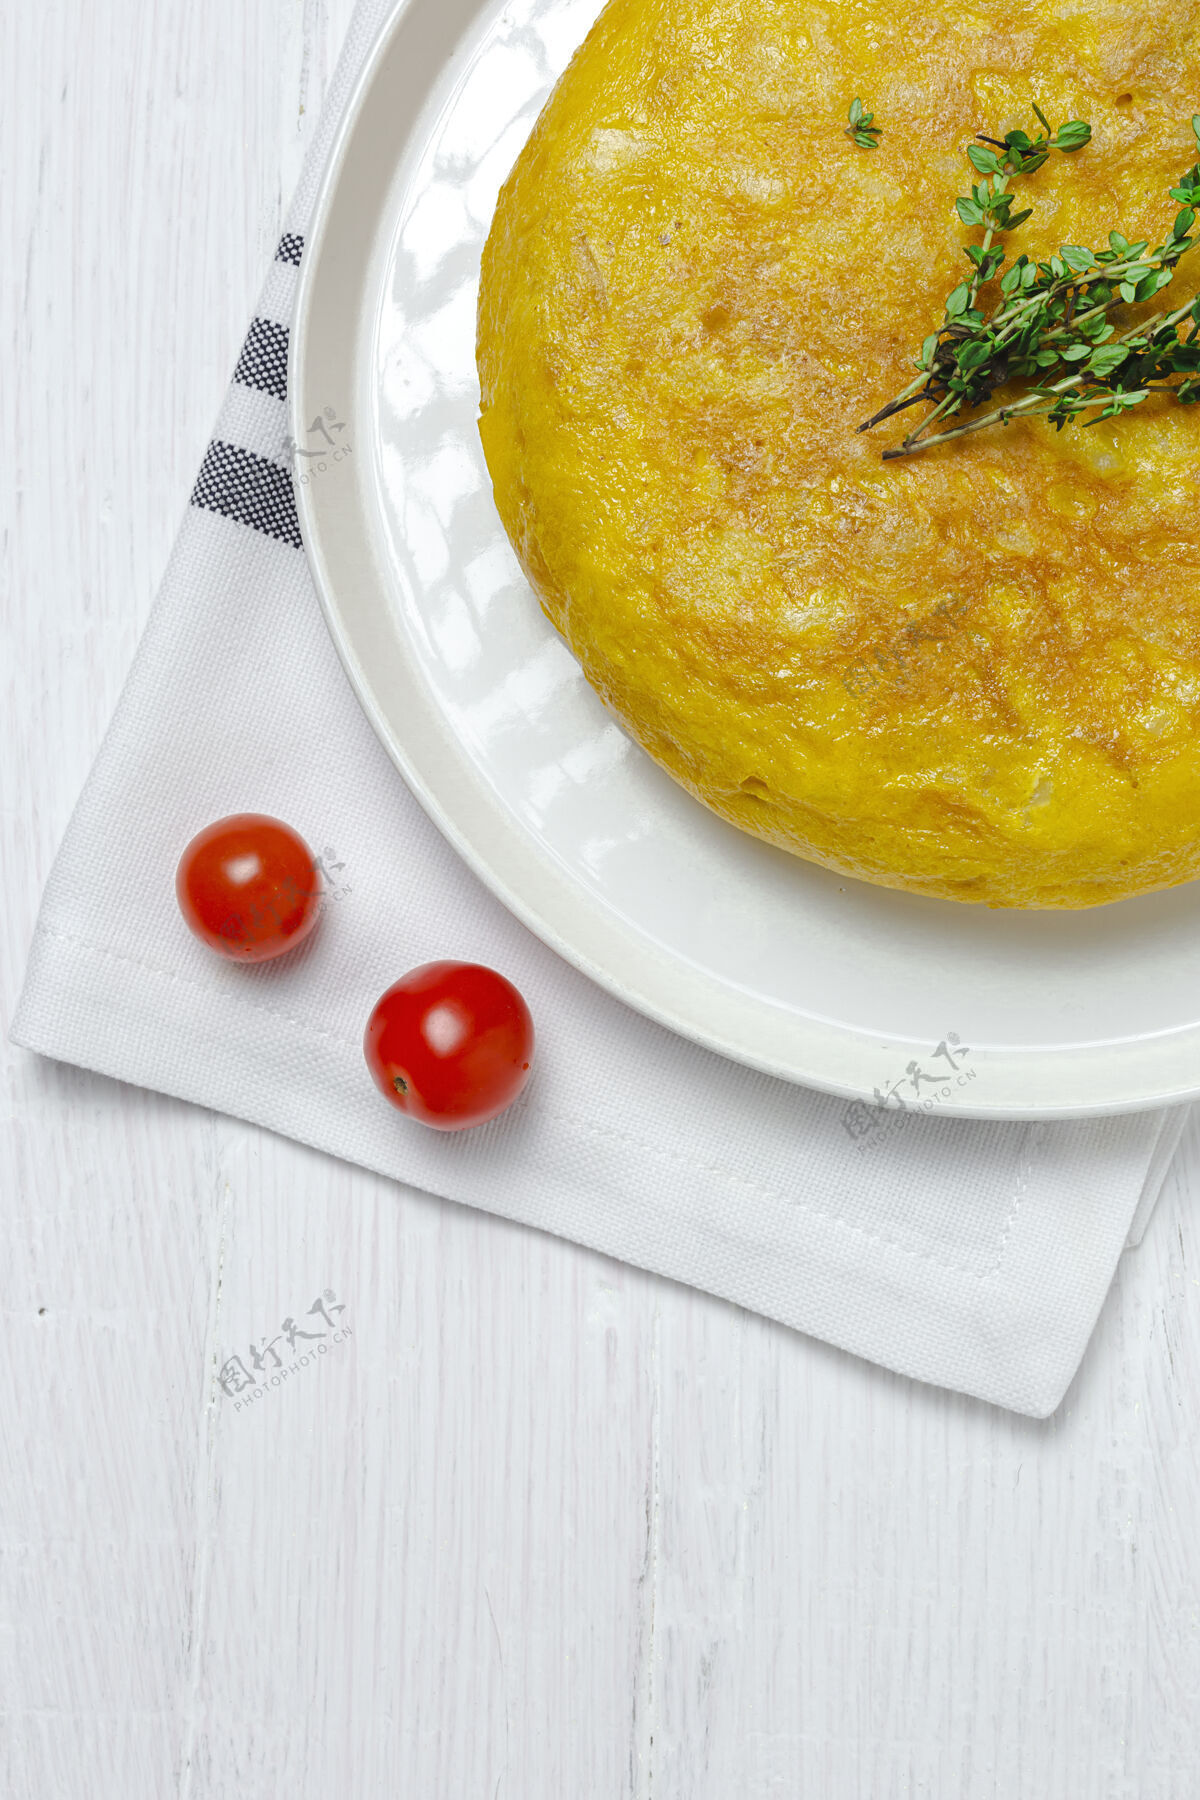 一餐自制西班牙煎蛋卷鸡蛋传统的西班牙菜传统美食美味